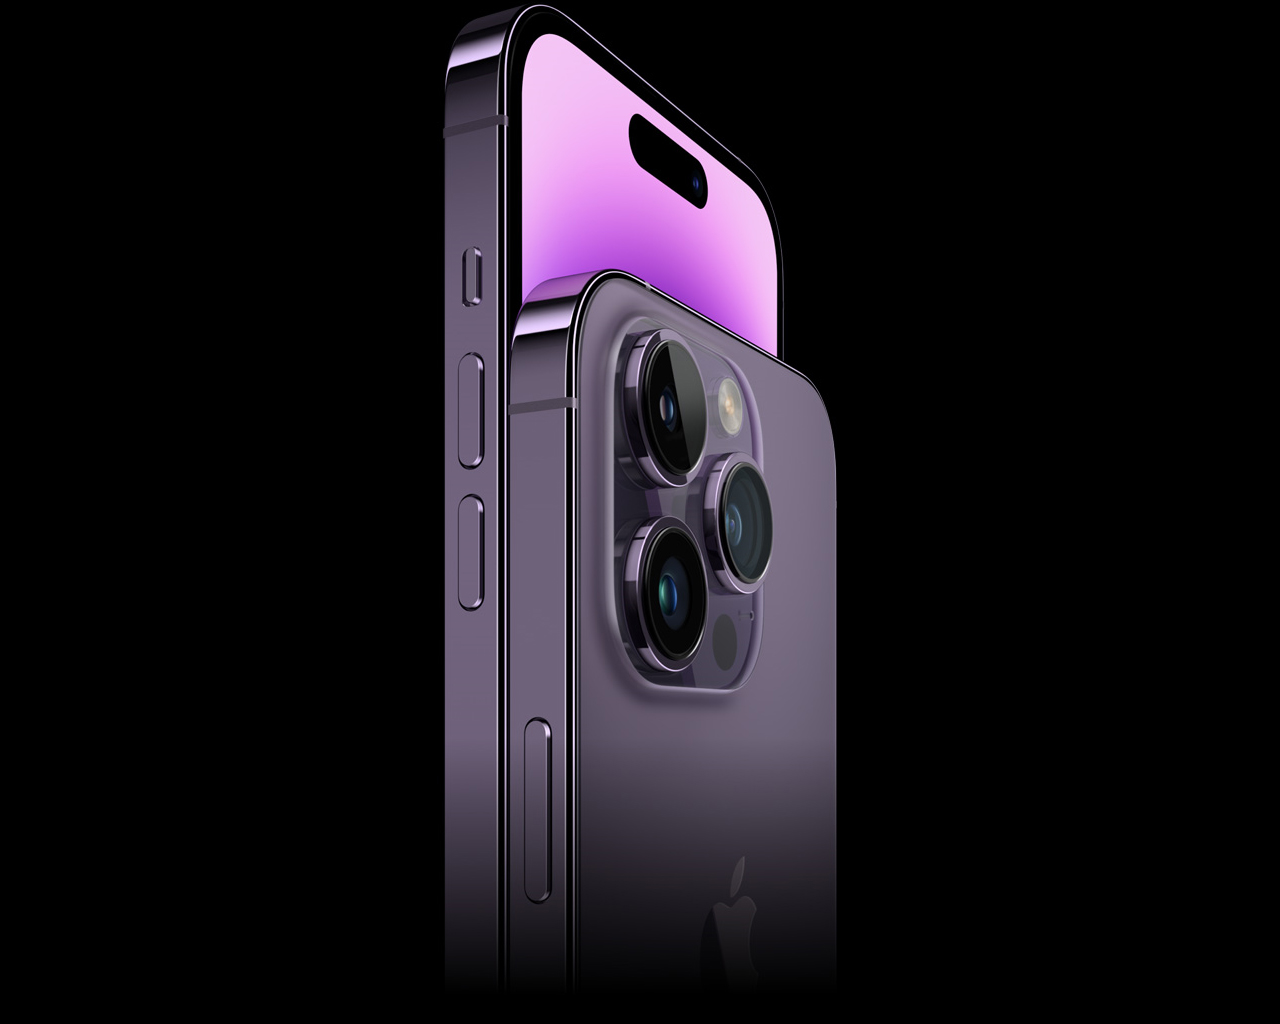 Haut-parleur Speaker Earpiece pour Apple Iphone 11 Pro Max (6.5)